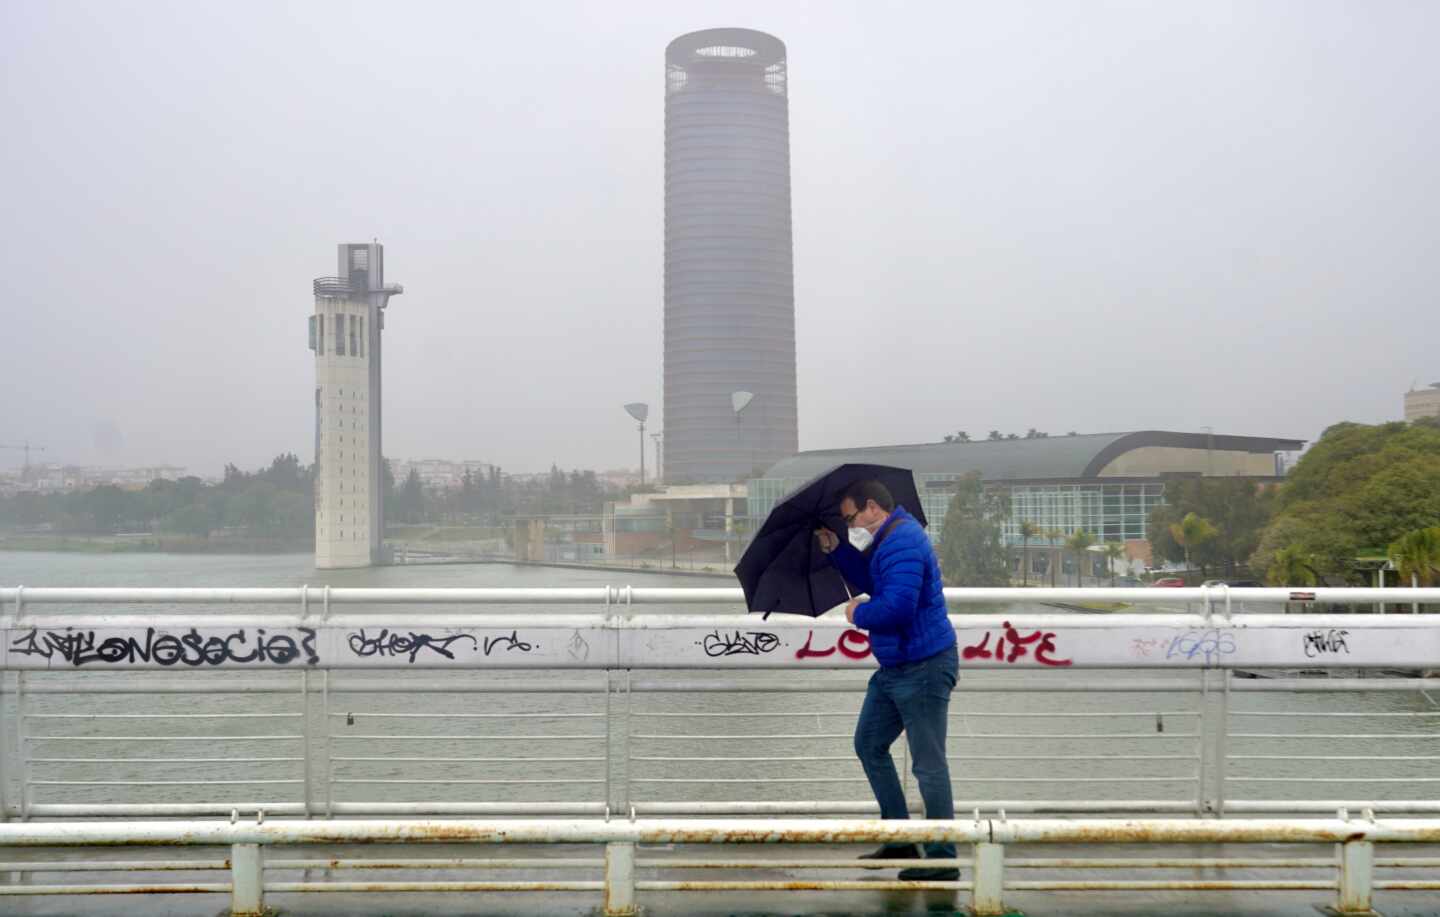 Un persona se protege de la lluvia y el viento caminando por Sevilla.